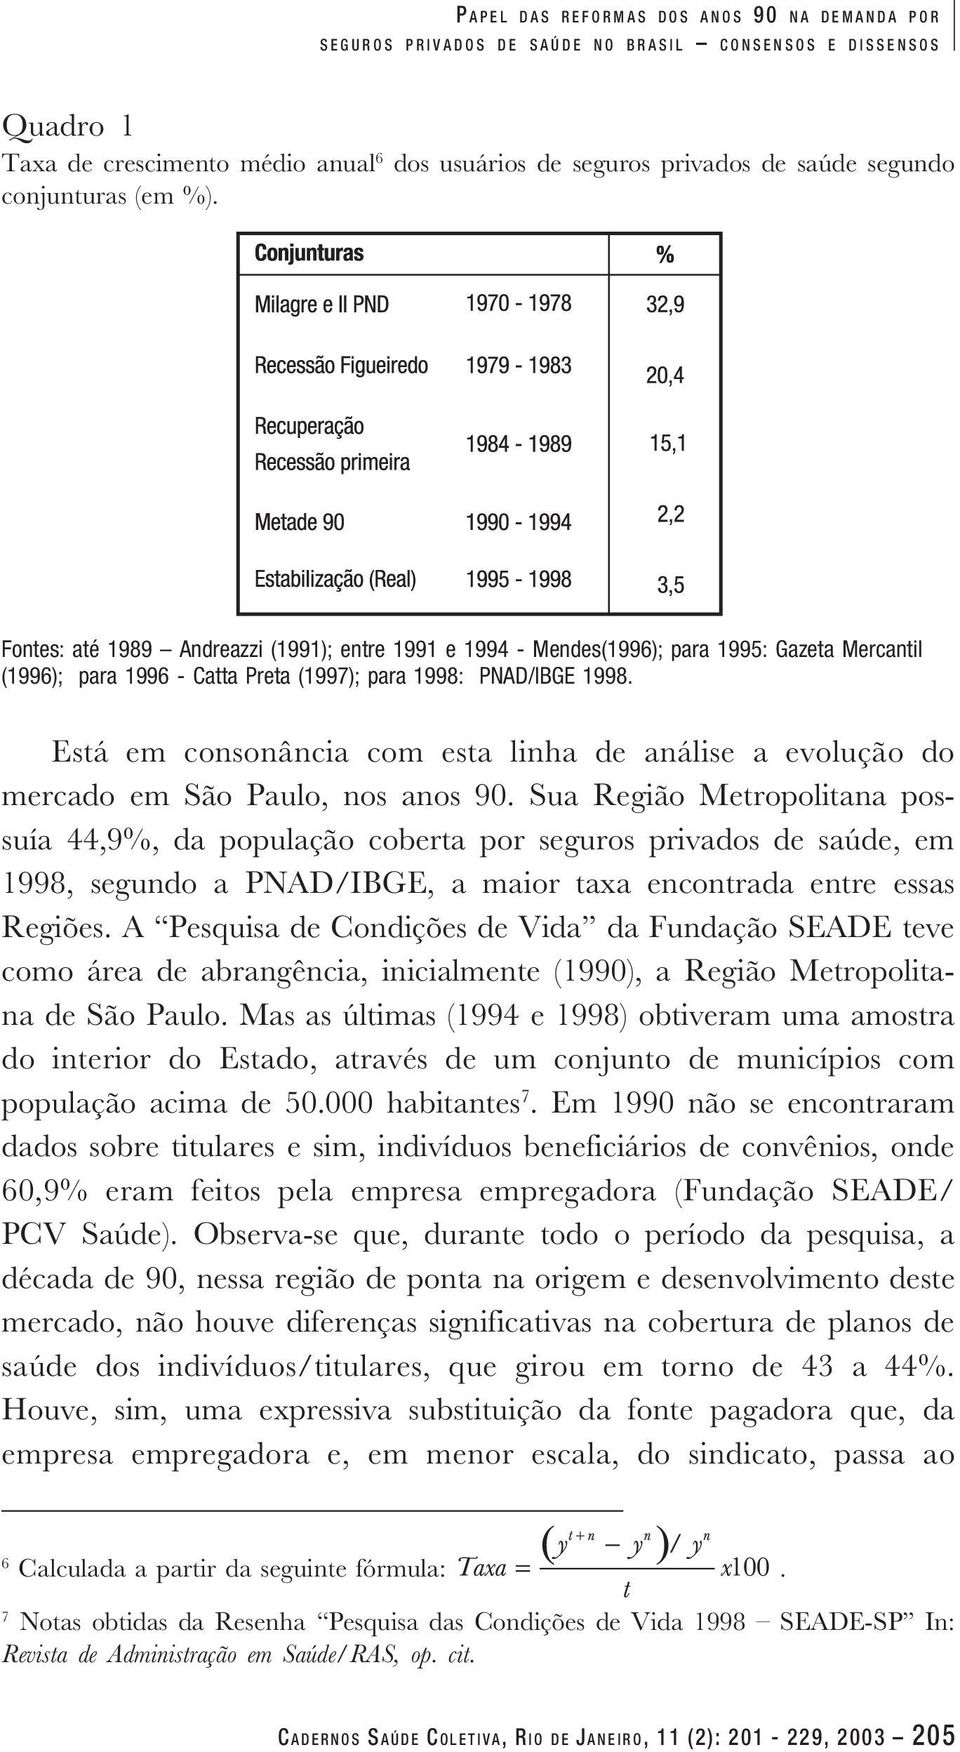 Está em consonância com esta linha de análise a evolução do mercado em São Paulo, nos anos 90.